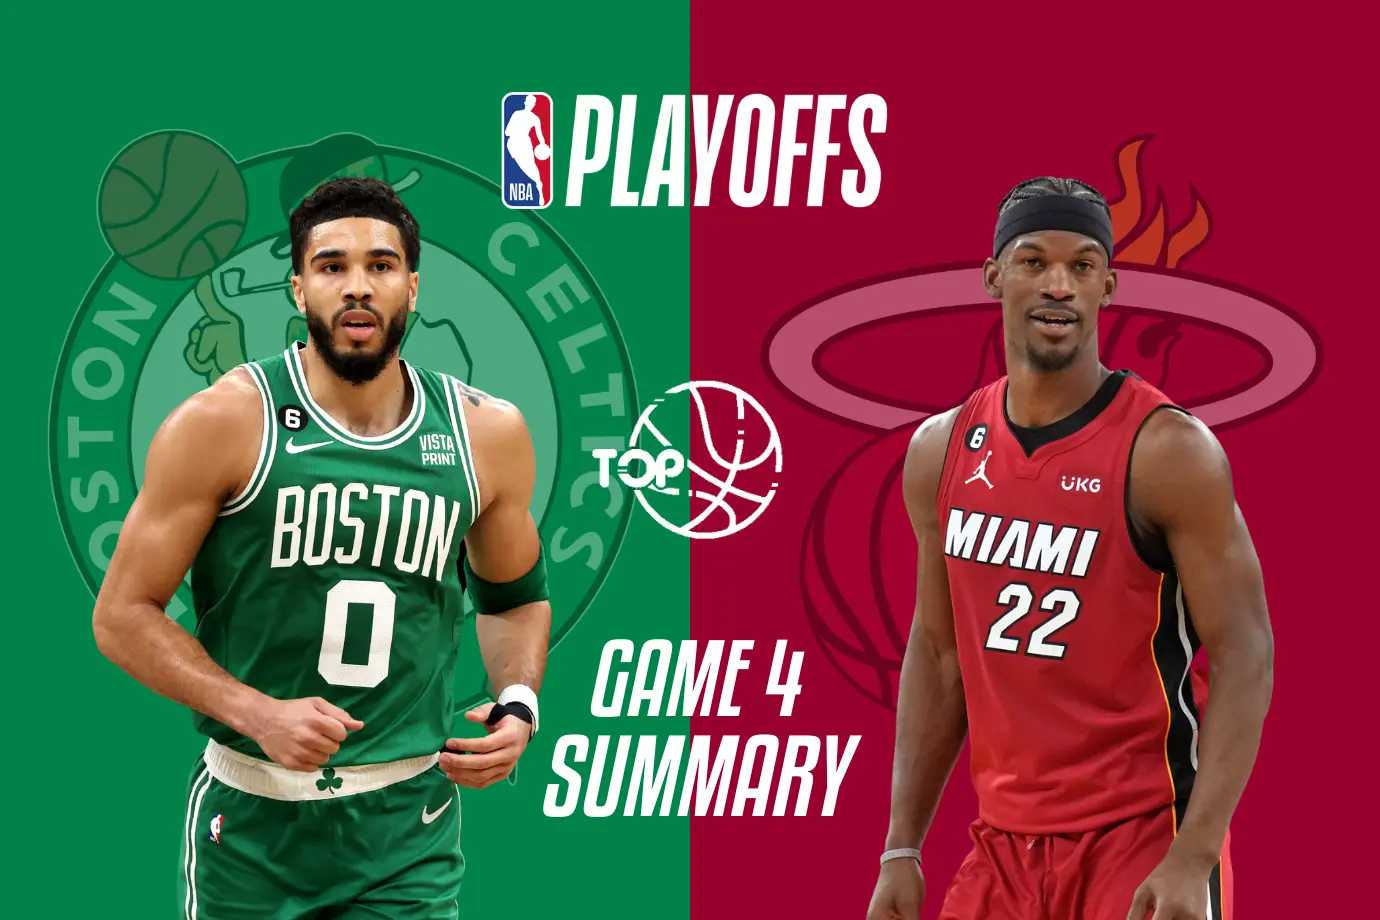 Dominasi Jayson Tatum Bantu Celtics Hindari Sweep, Kalahkan Heat di Game 4